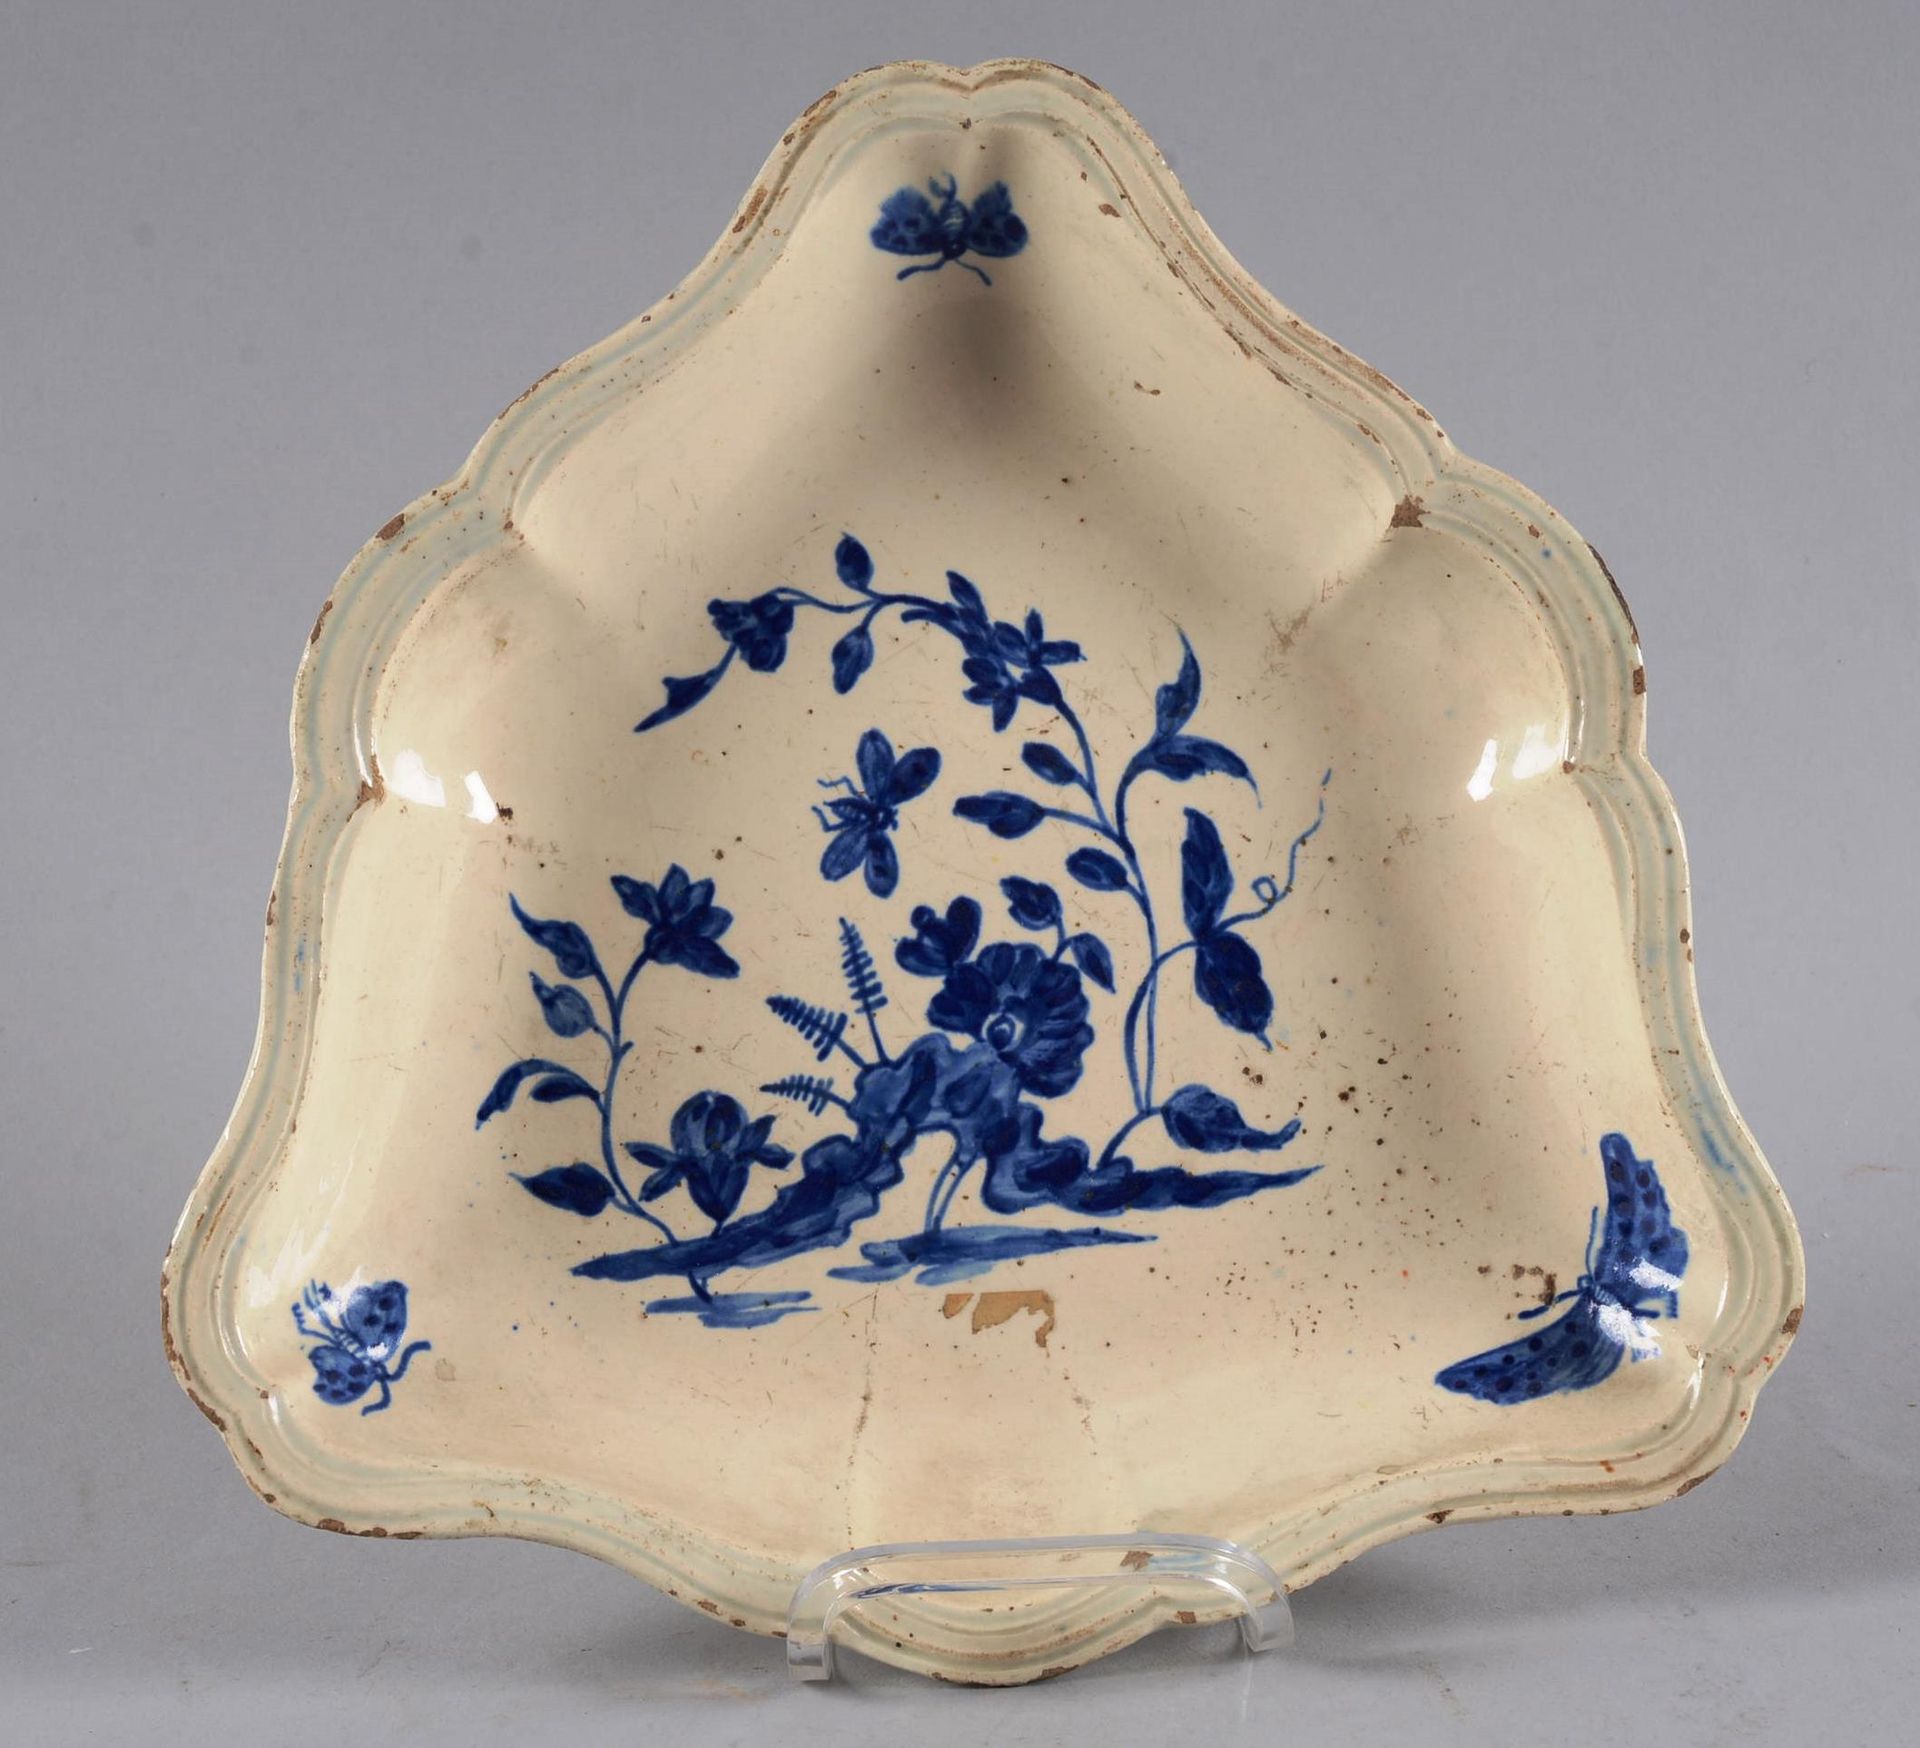 Présentoir en faïence fine 精美的陶器展示架，用蓝色的花和昆虫装饰，具有中国风格。法国北部或比利时。

尺寸：25厘米 x 26厘米